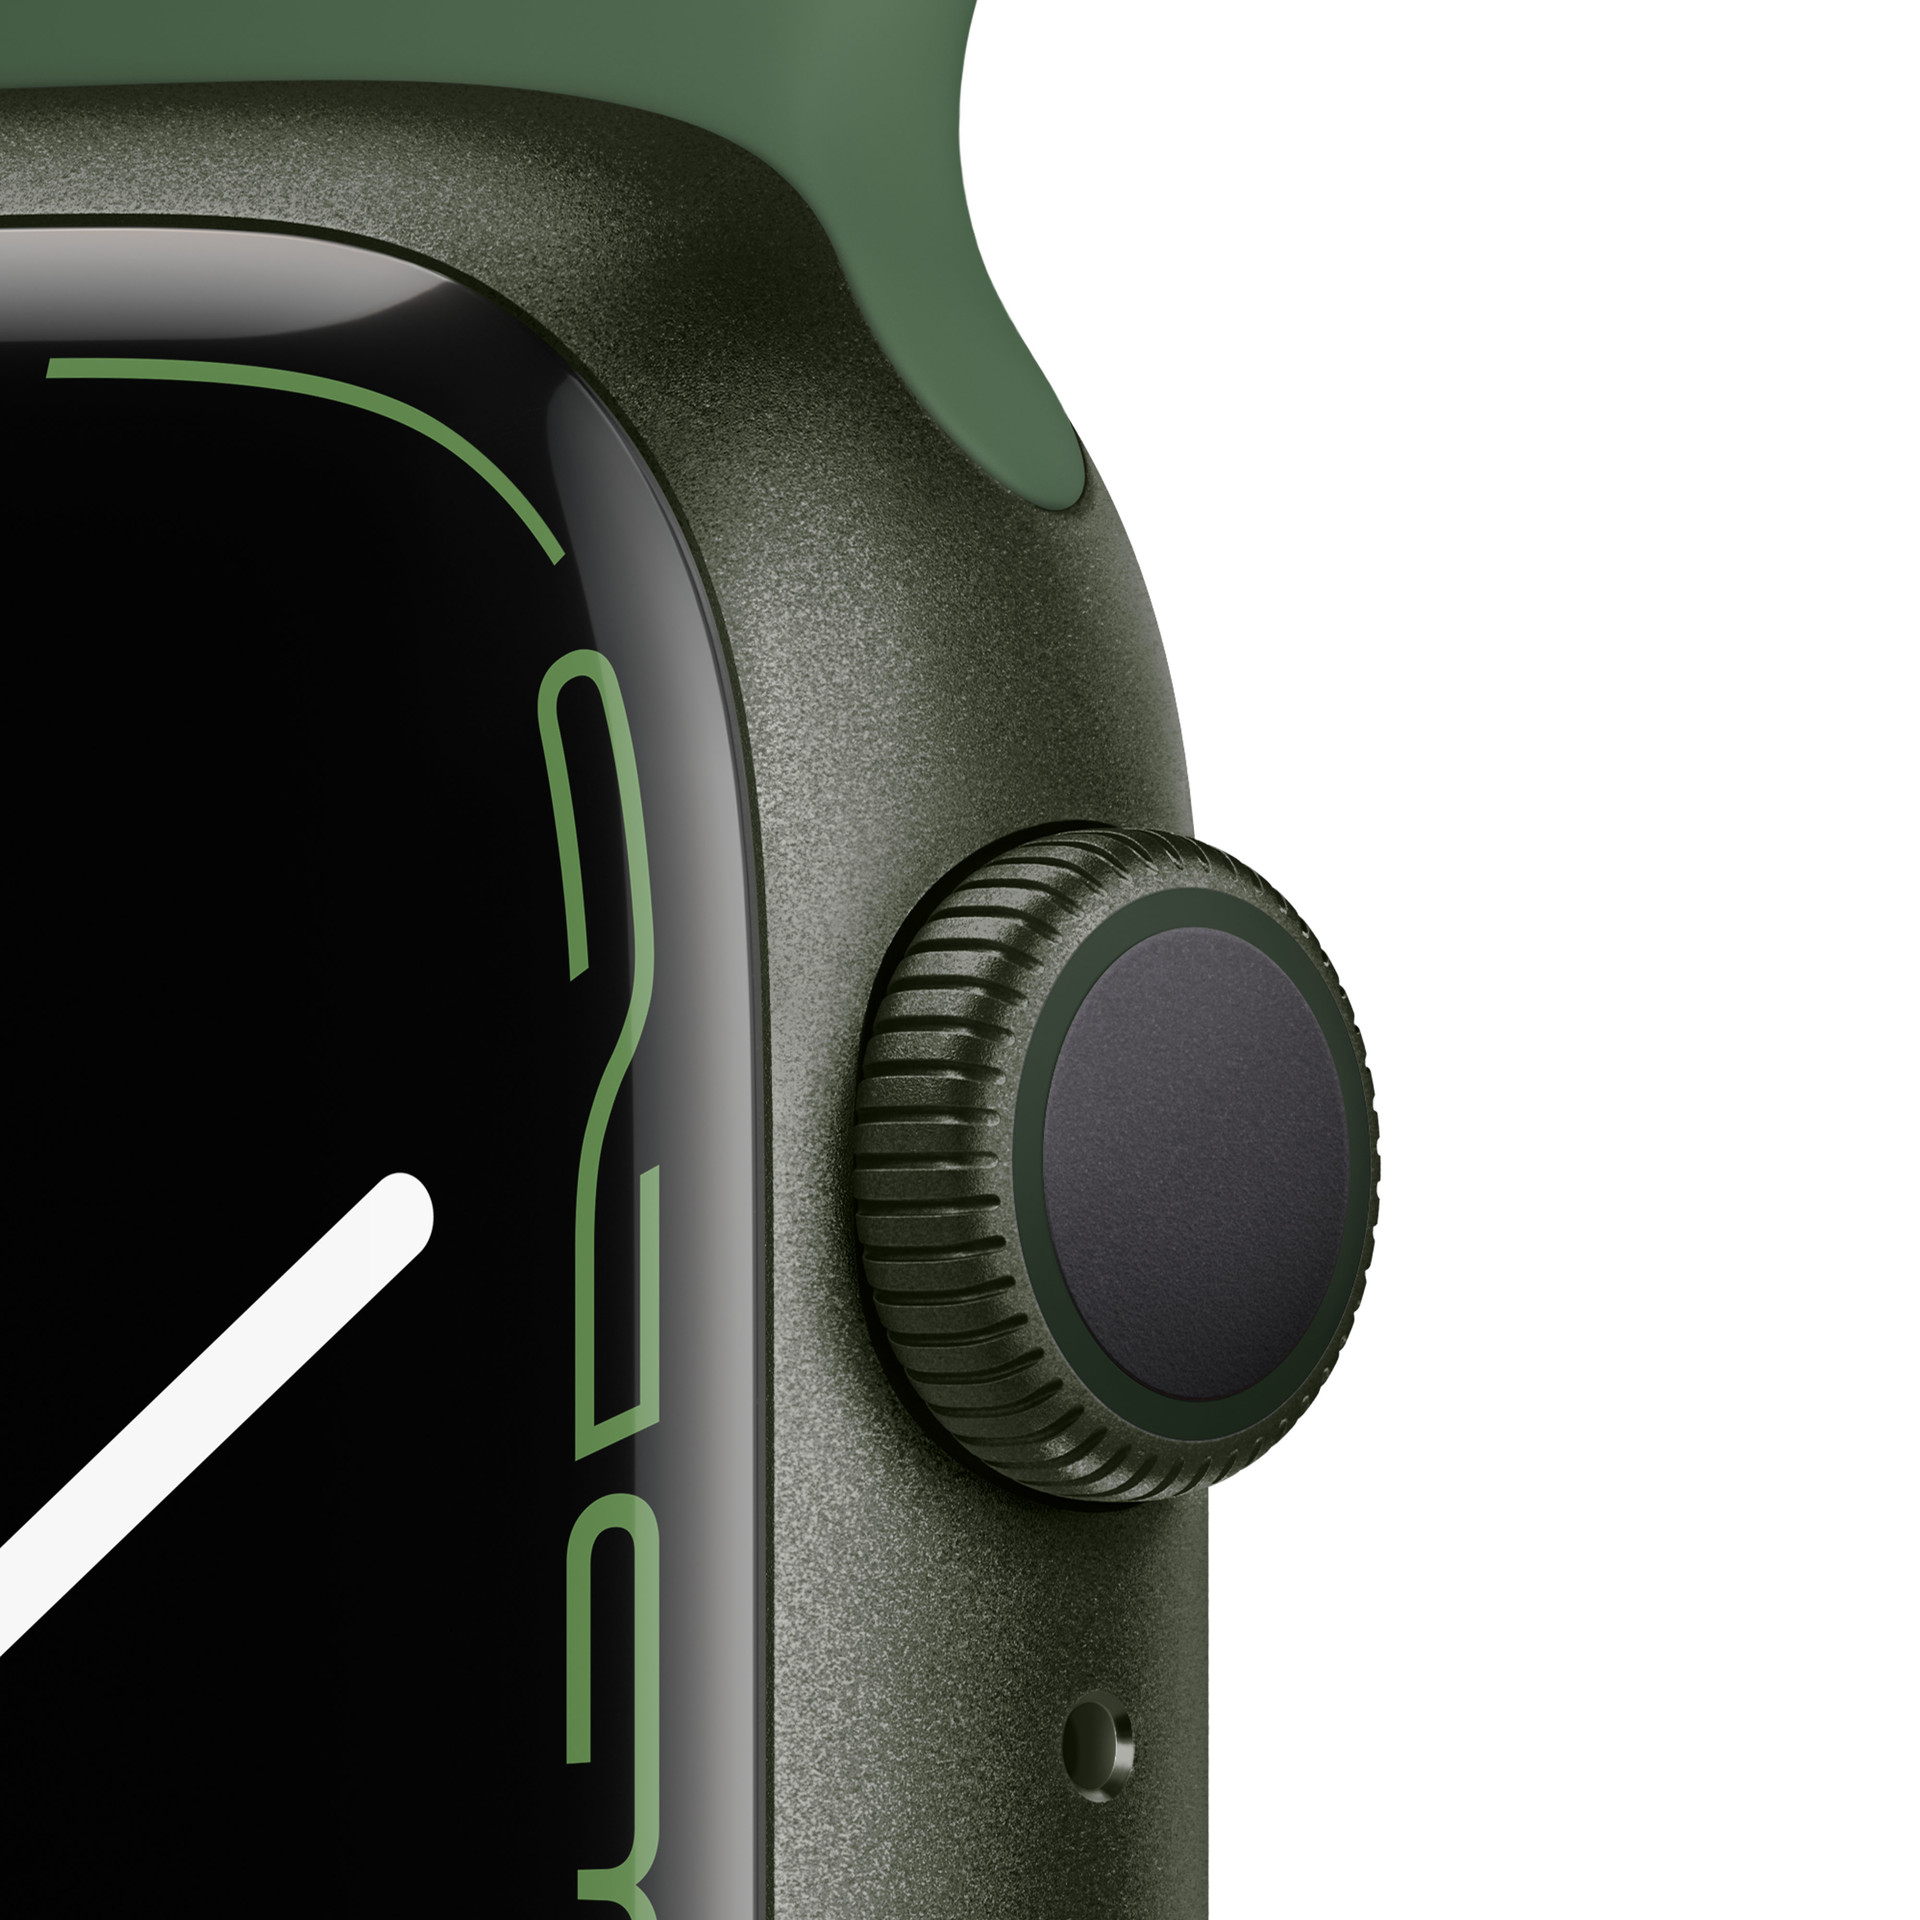 Apple Watch - Apple Watch 7 GPSモデル 41mm アルミニウム